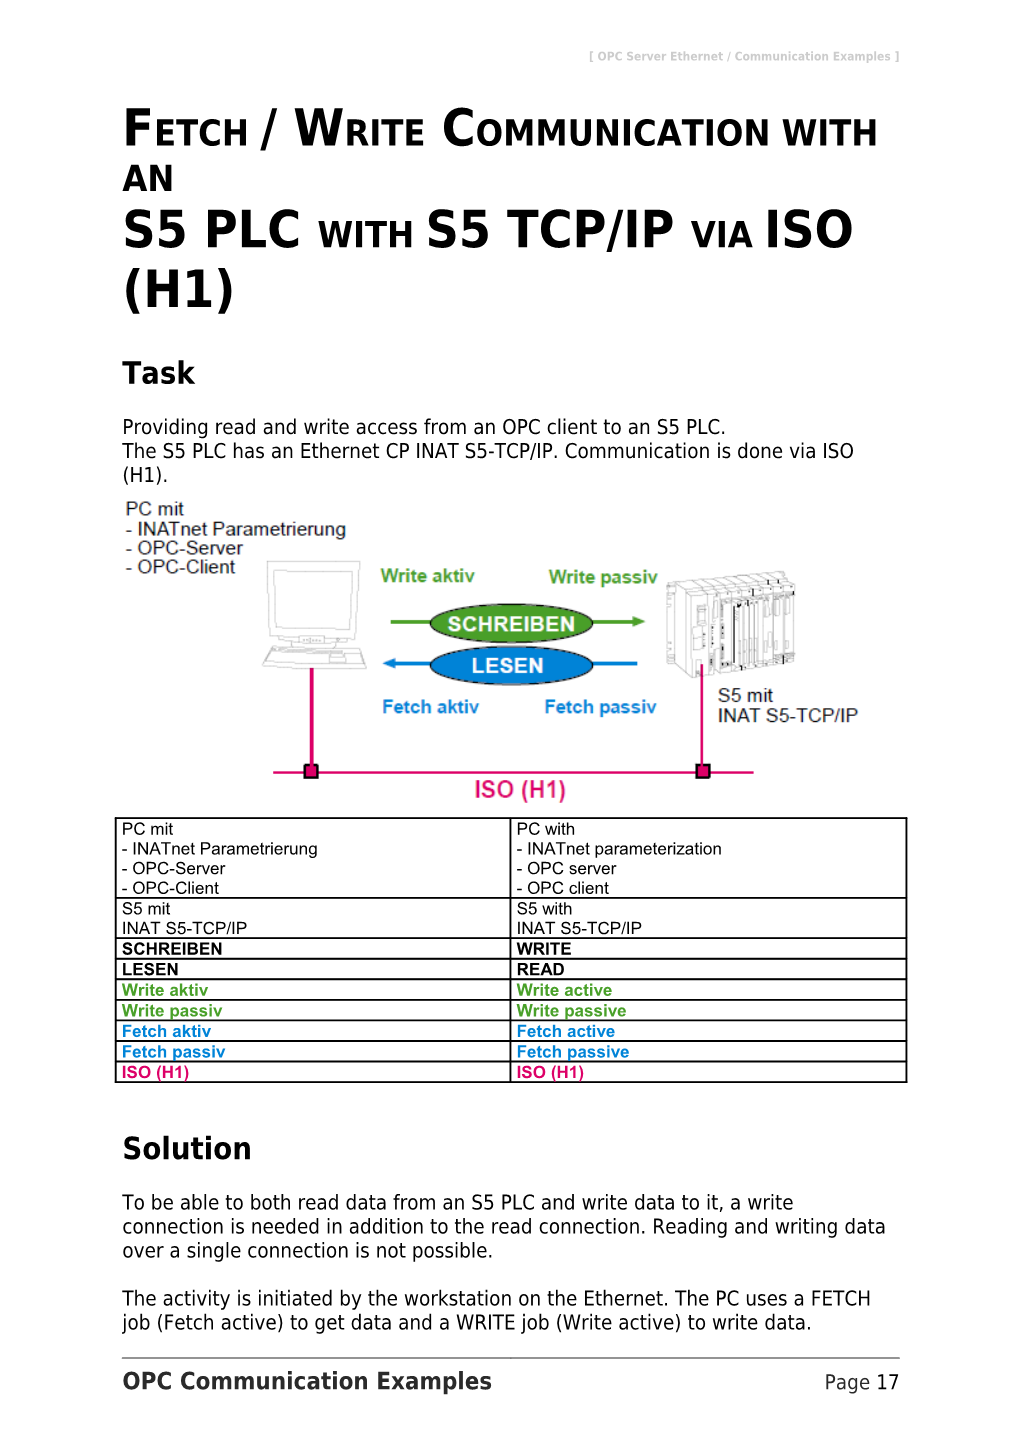 Beispiele OPC-Kommunikation s1